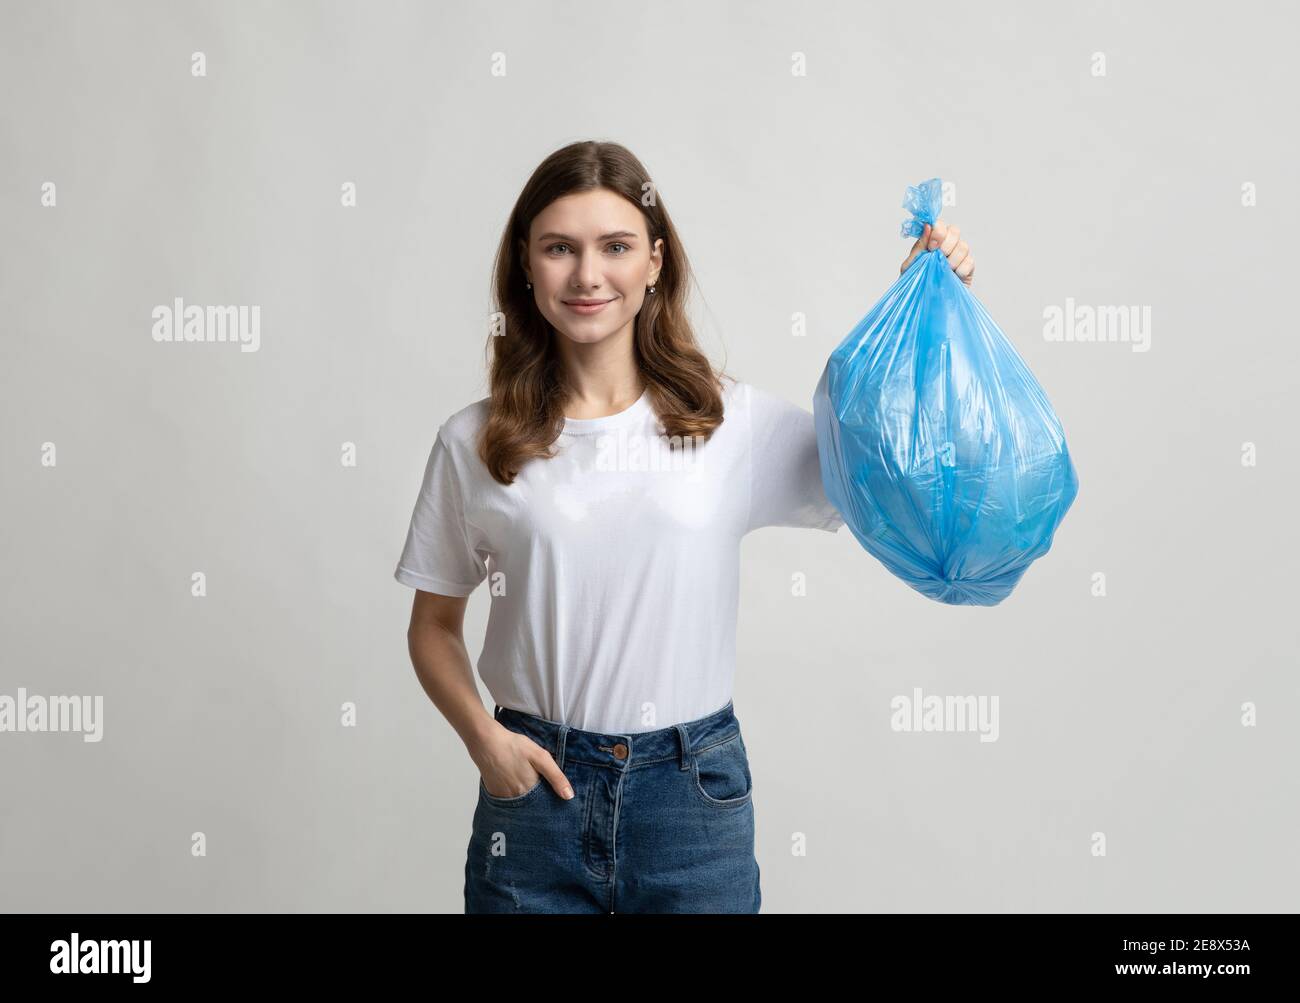 Felice giovane donna che tiene il sacchetto blu di plastica della spazzatura, in piedi su sfondo grigio Foto Stock